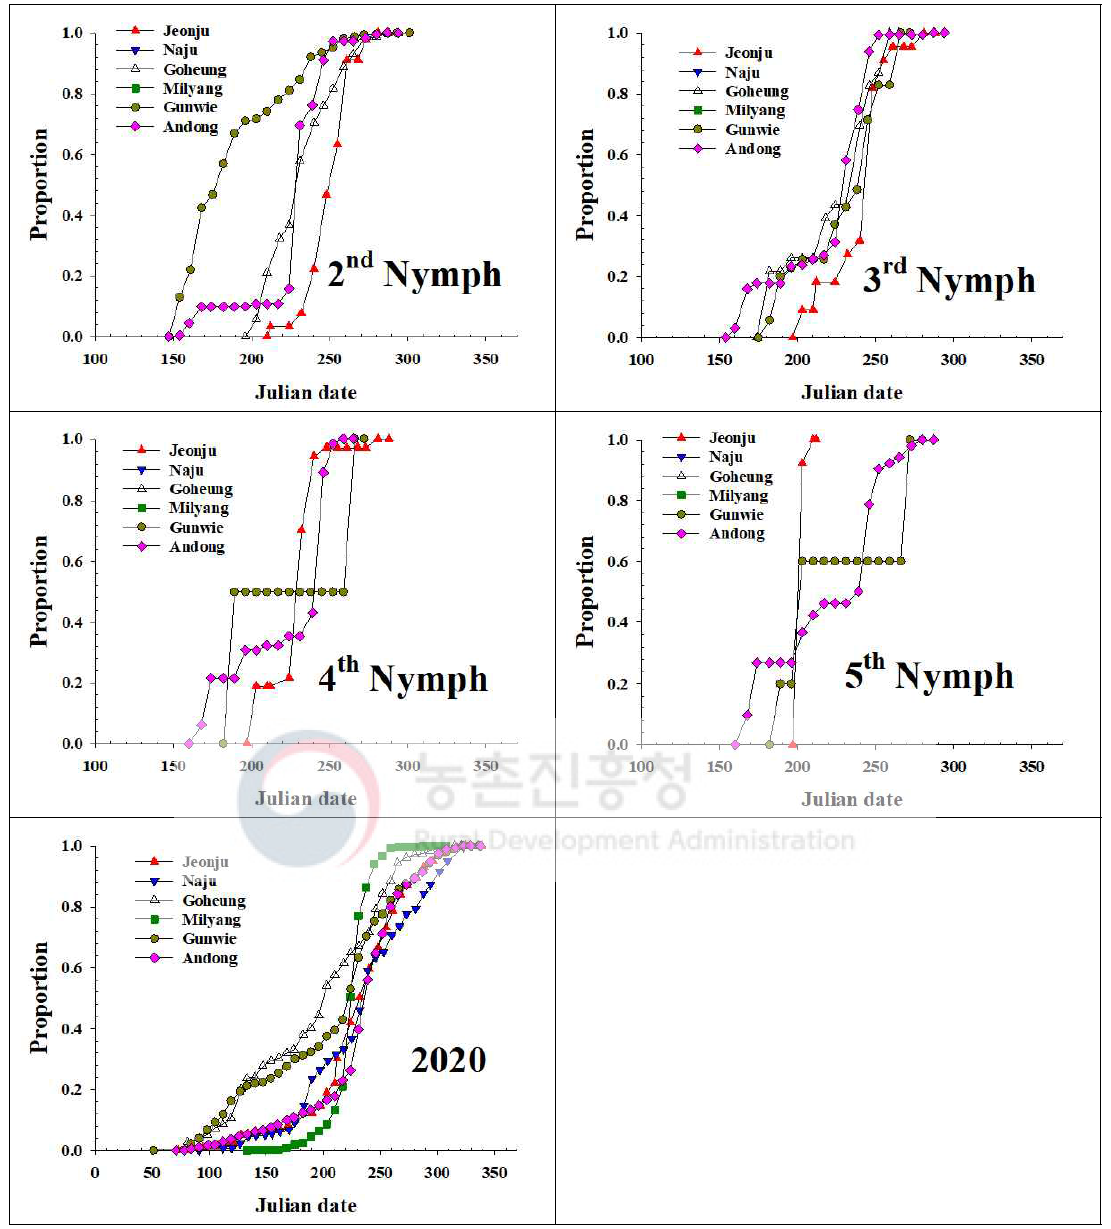 내륙지역 톱다리개미허리노린재 발육단계별 개체수 누적증가 지역간 비교(2020)